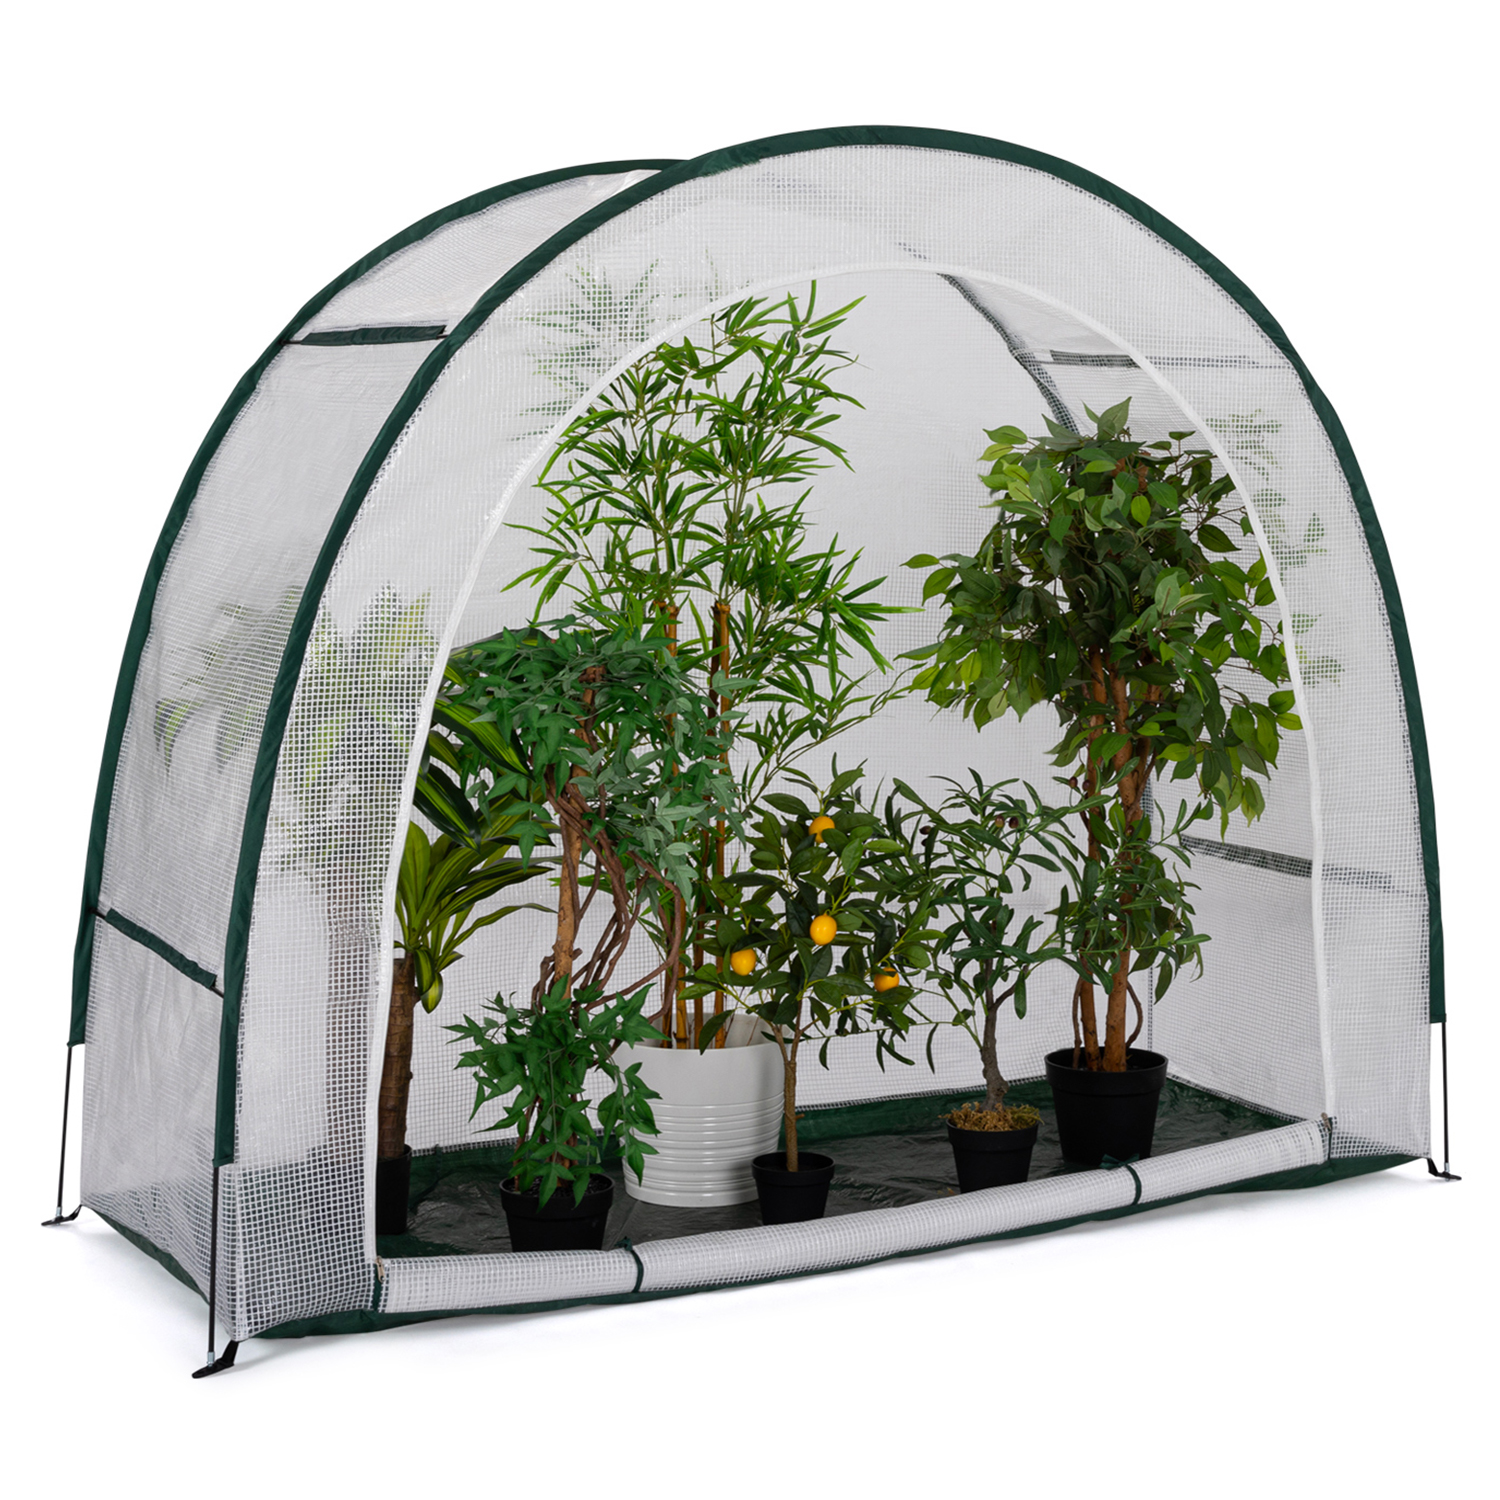 Housse hivernage plantes x2, protection contre le froid, nortène,  achat/vente